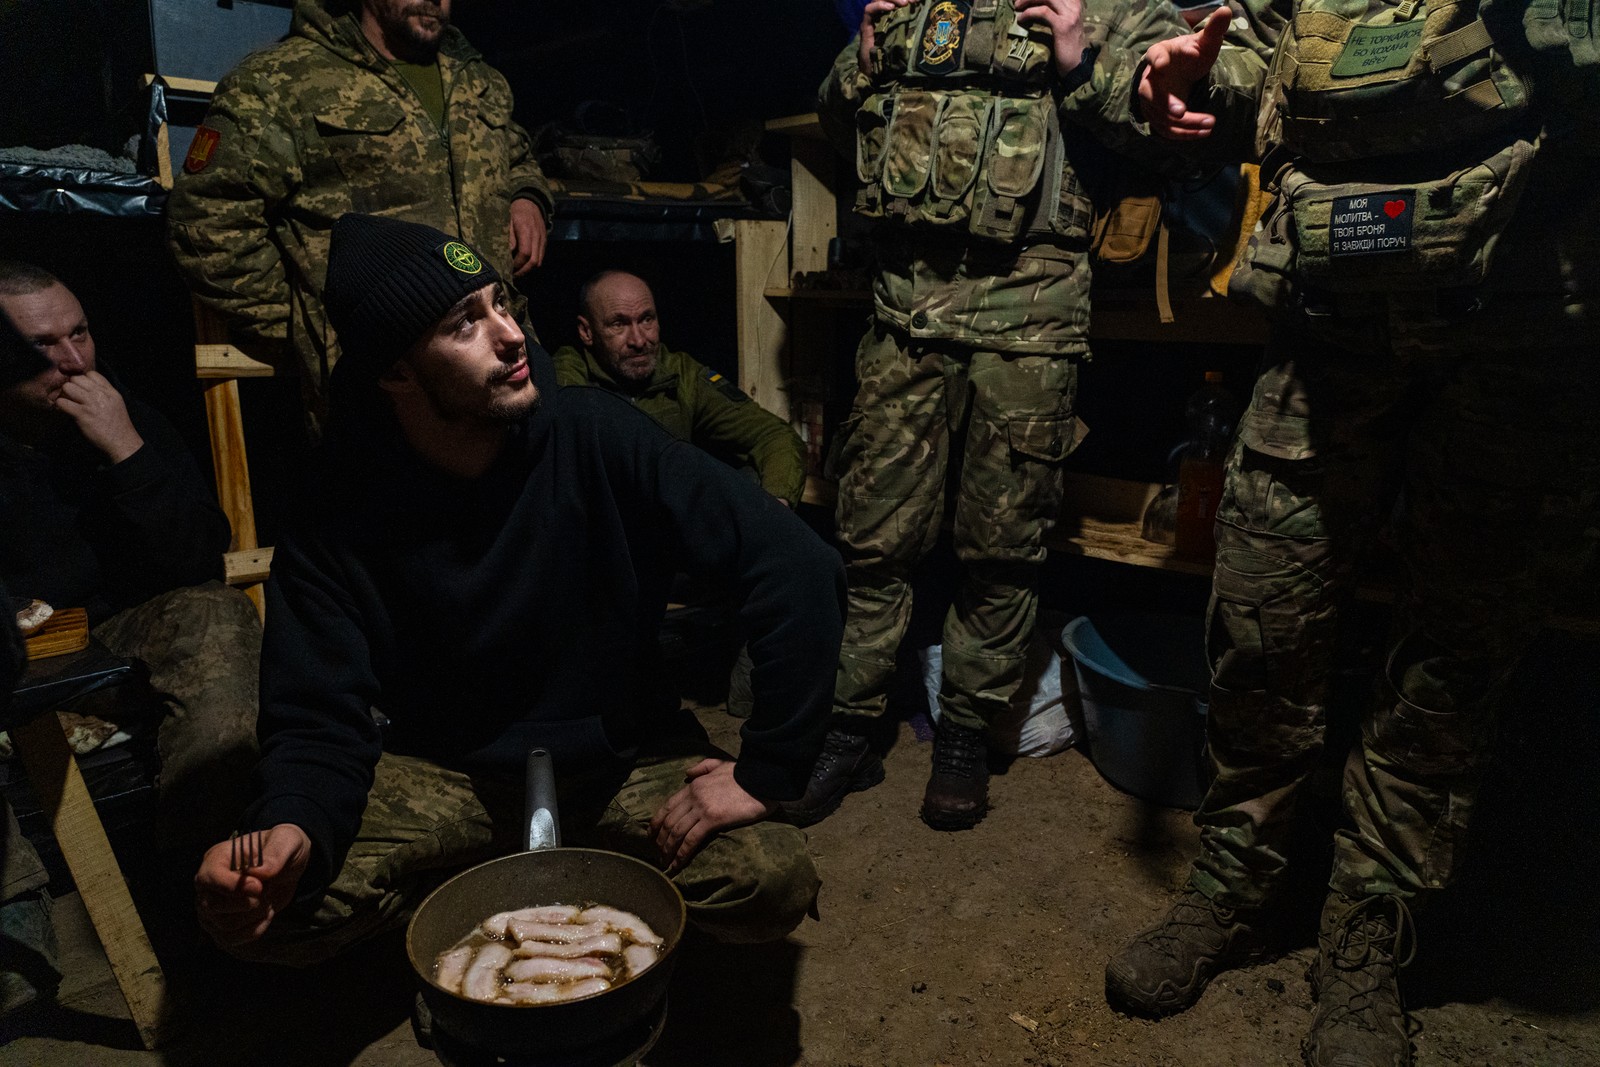 Soldados ucranianos fritam barriga de porco para comer como jantar em um bunker nas linhas de frente. Com os russos atacando e pouca munição soldados passam a maior parte do tempo em buracos como esse aguardando raras ordens para disparar contra o inimigo. Foto tirada em Kupiansk, Oblast de Kharkiv, Ucrânia. — Foto: Yan Boechat